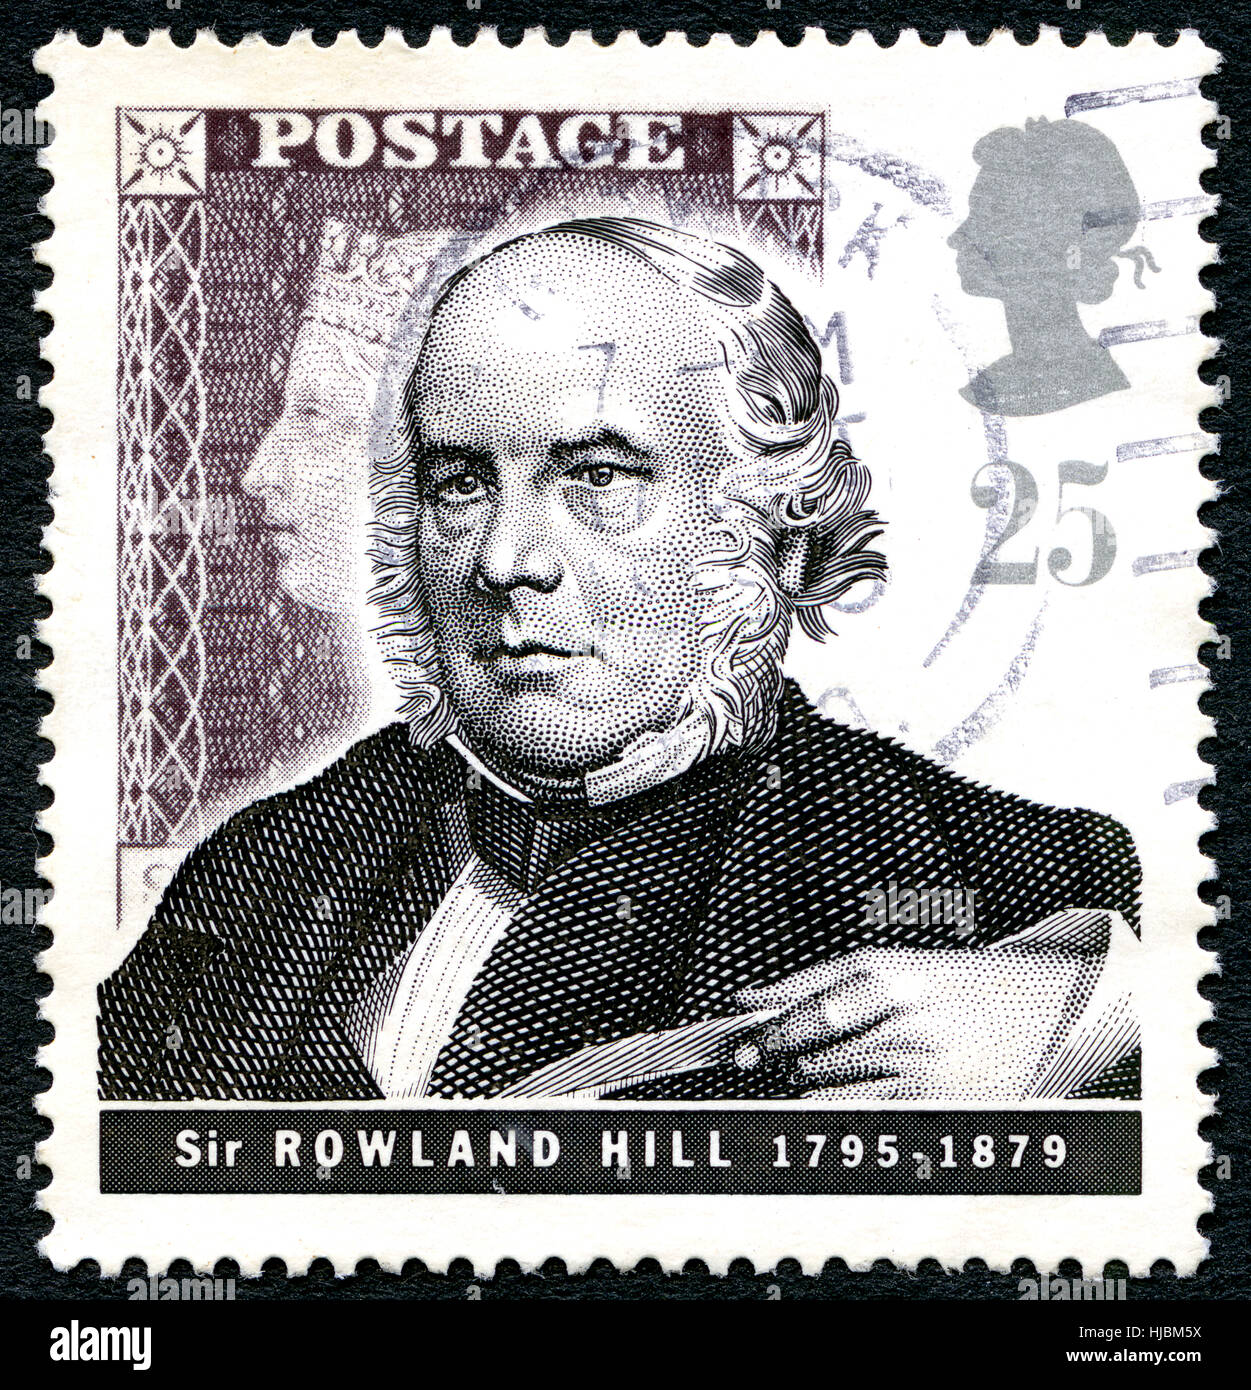 Gran Bretagna - circa 1979: un usato francobollo DAL REGNO UNITO, raffigurante un ritratto di insegnante di inglese, inventore e riformista sociale Sir Rowland Hill, Foto Stock